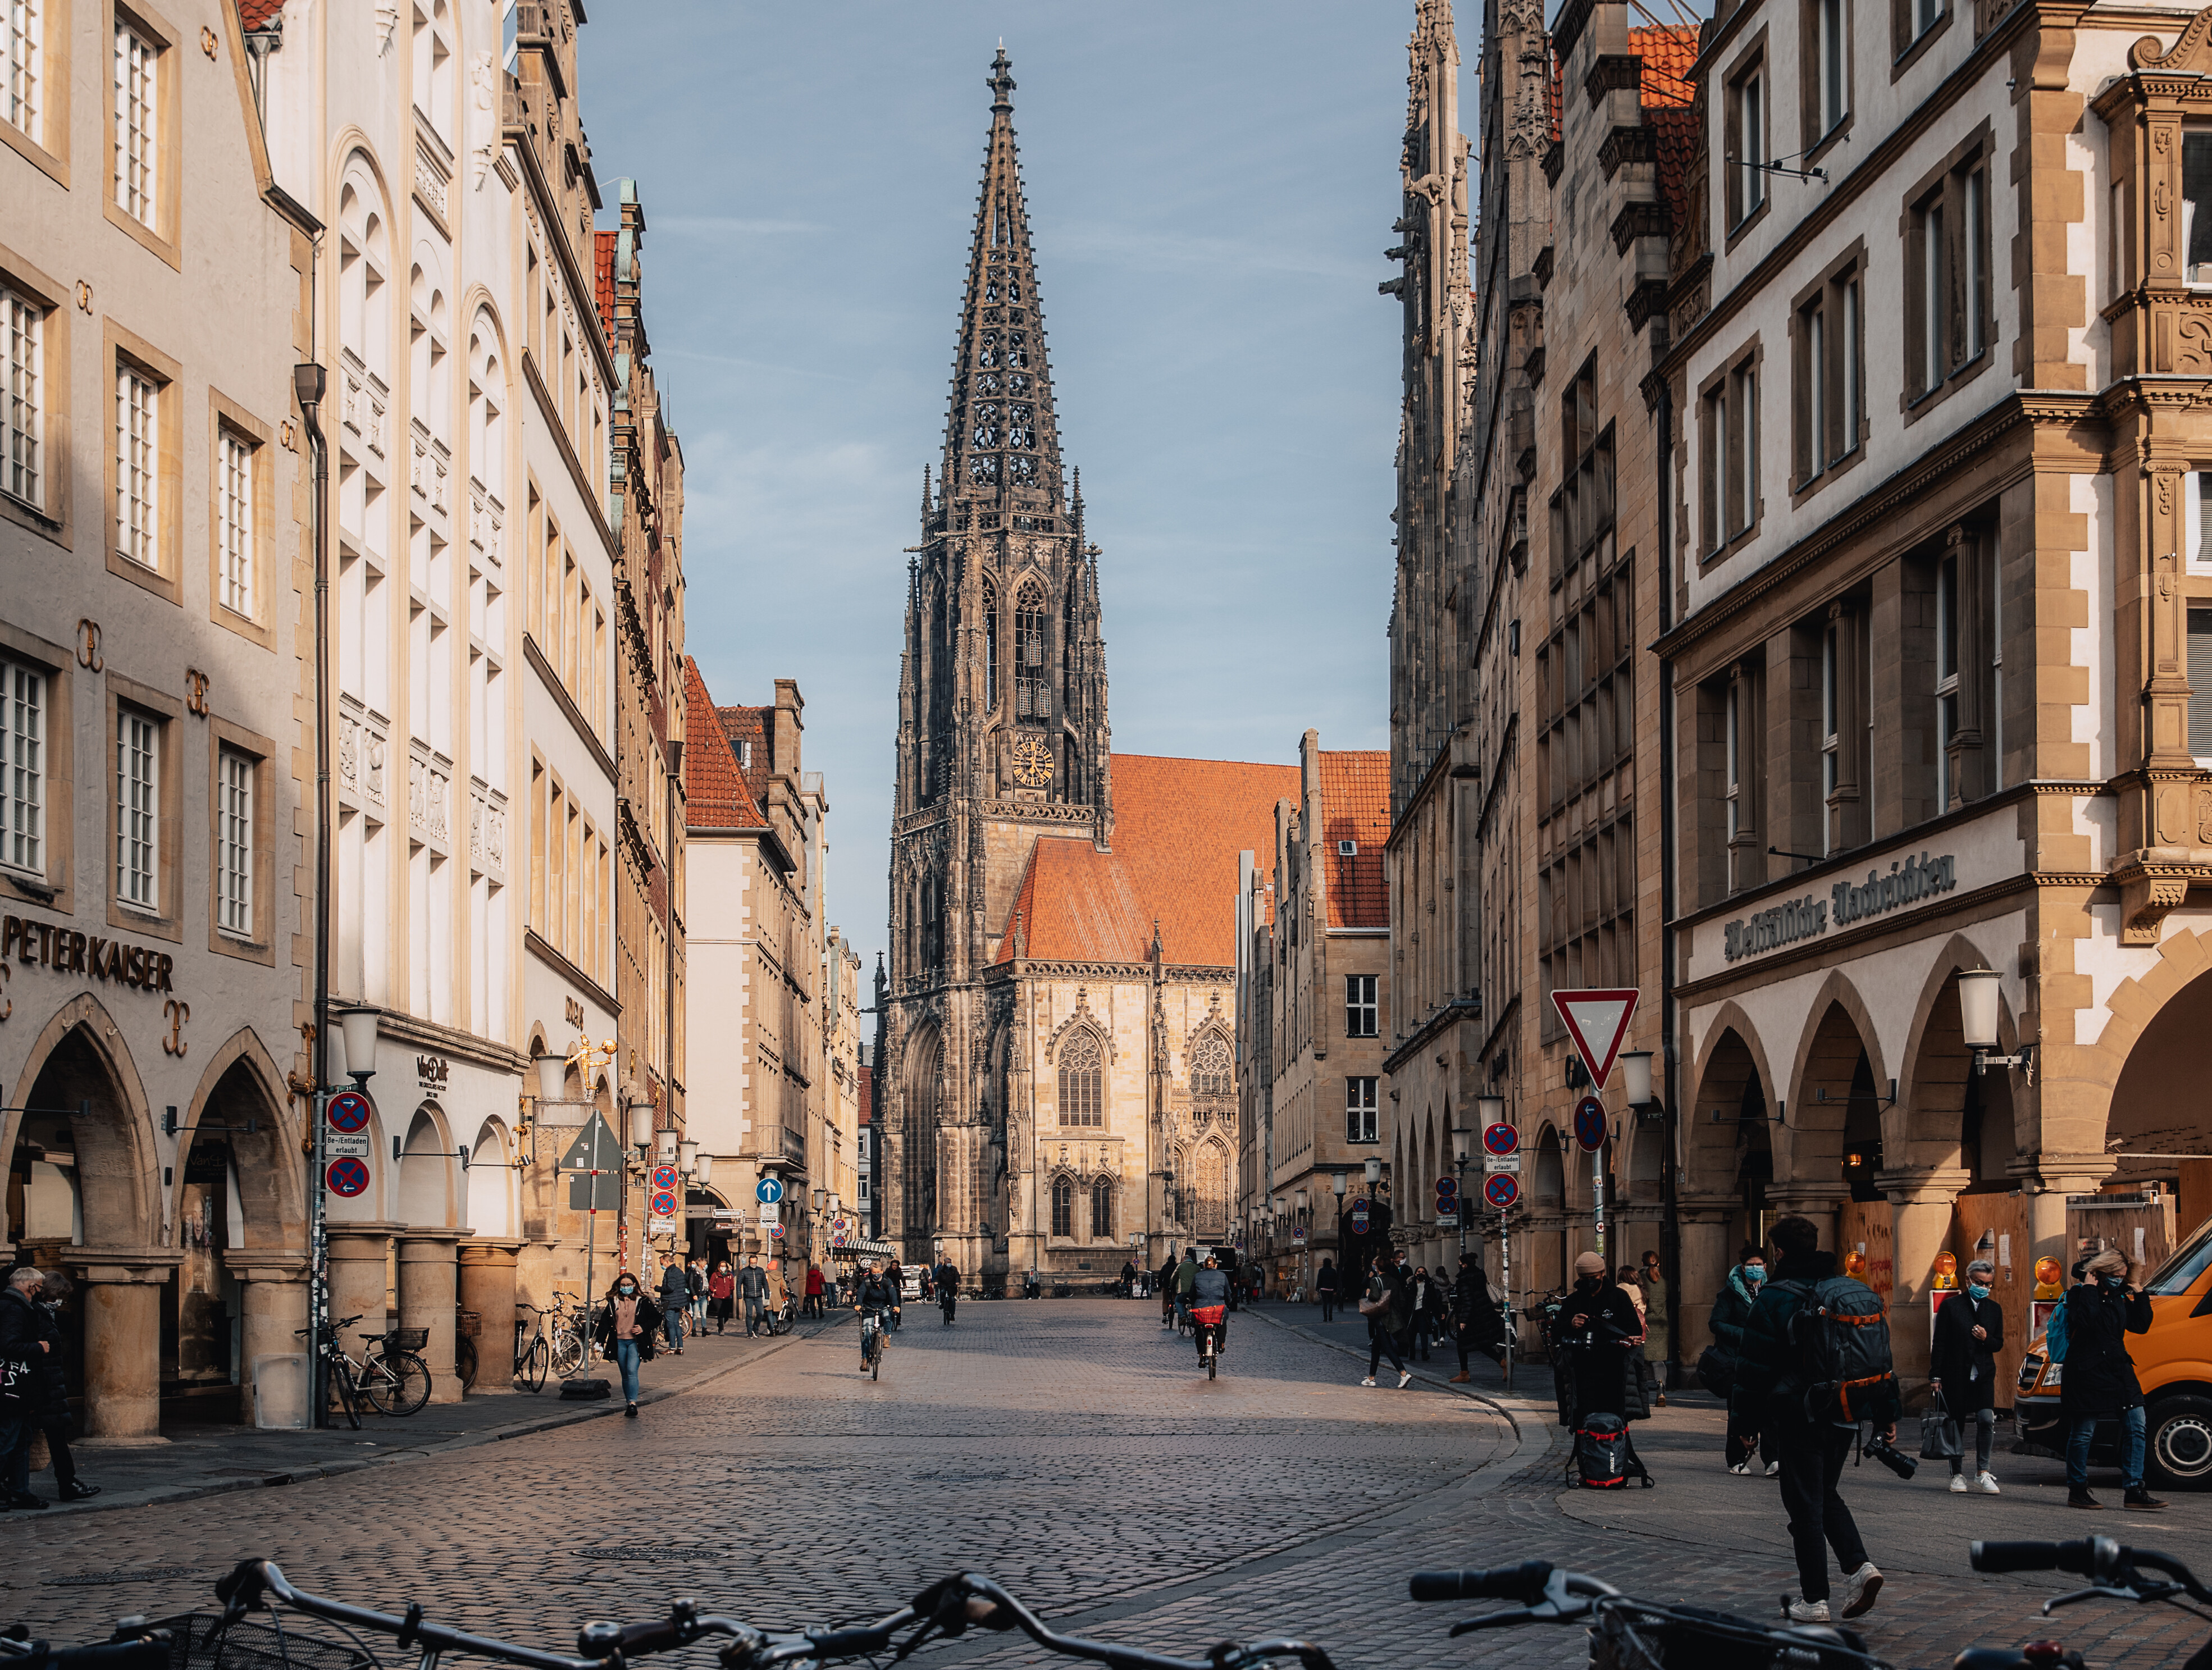 Blick auf den Prinzipalmarkt und die Lamberti-Kirche in Münster. Durch die Straße fahren viele Menschen auf Fahrrädern.  